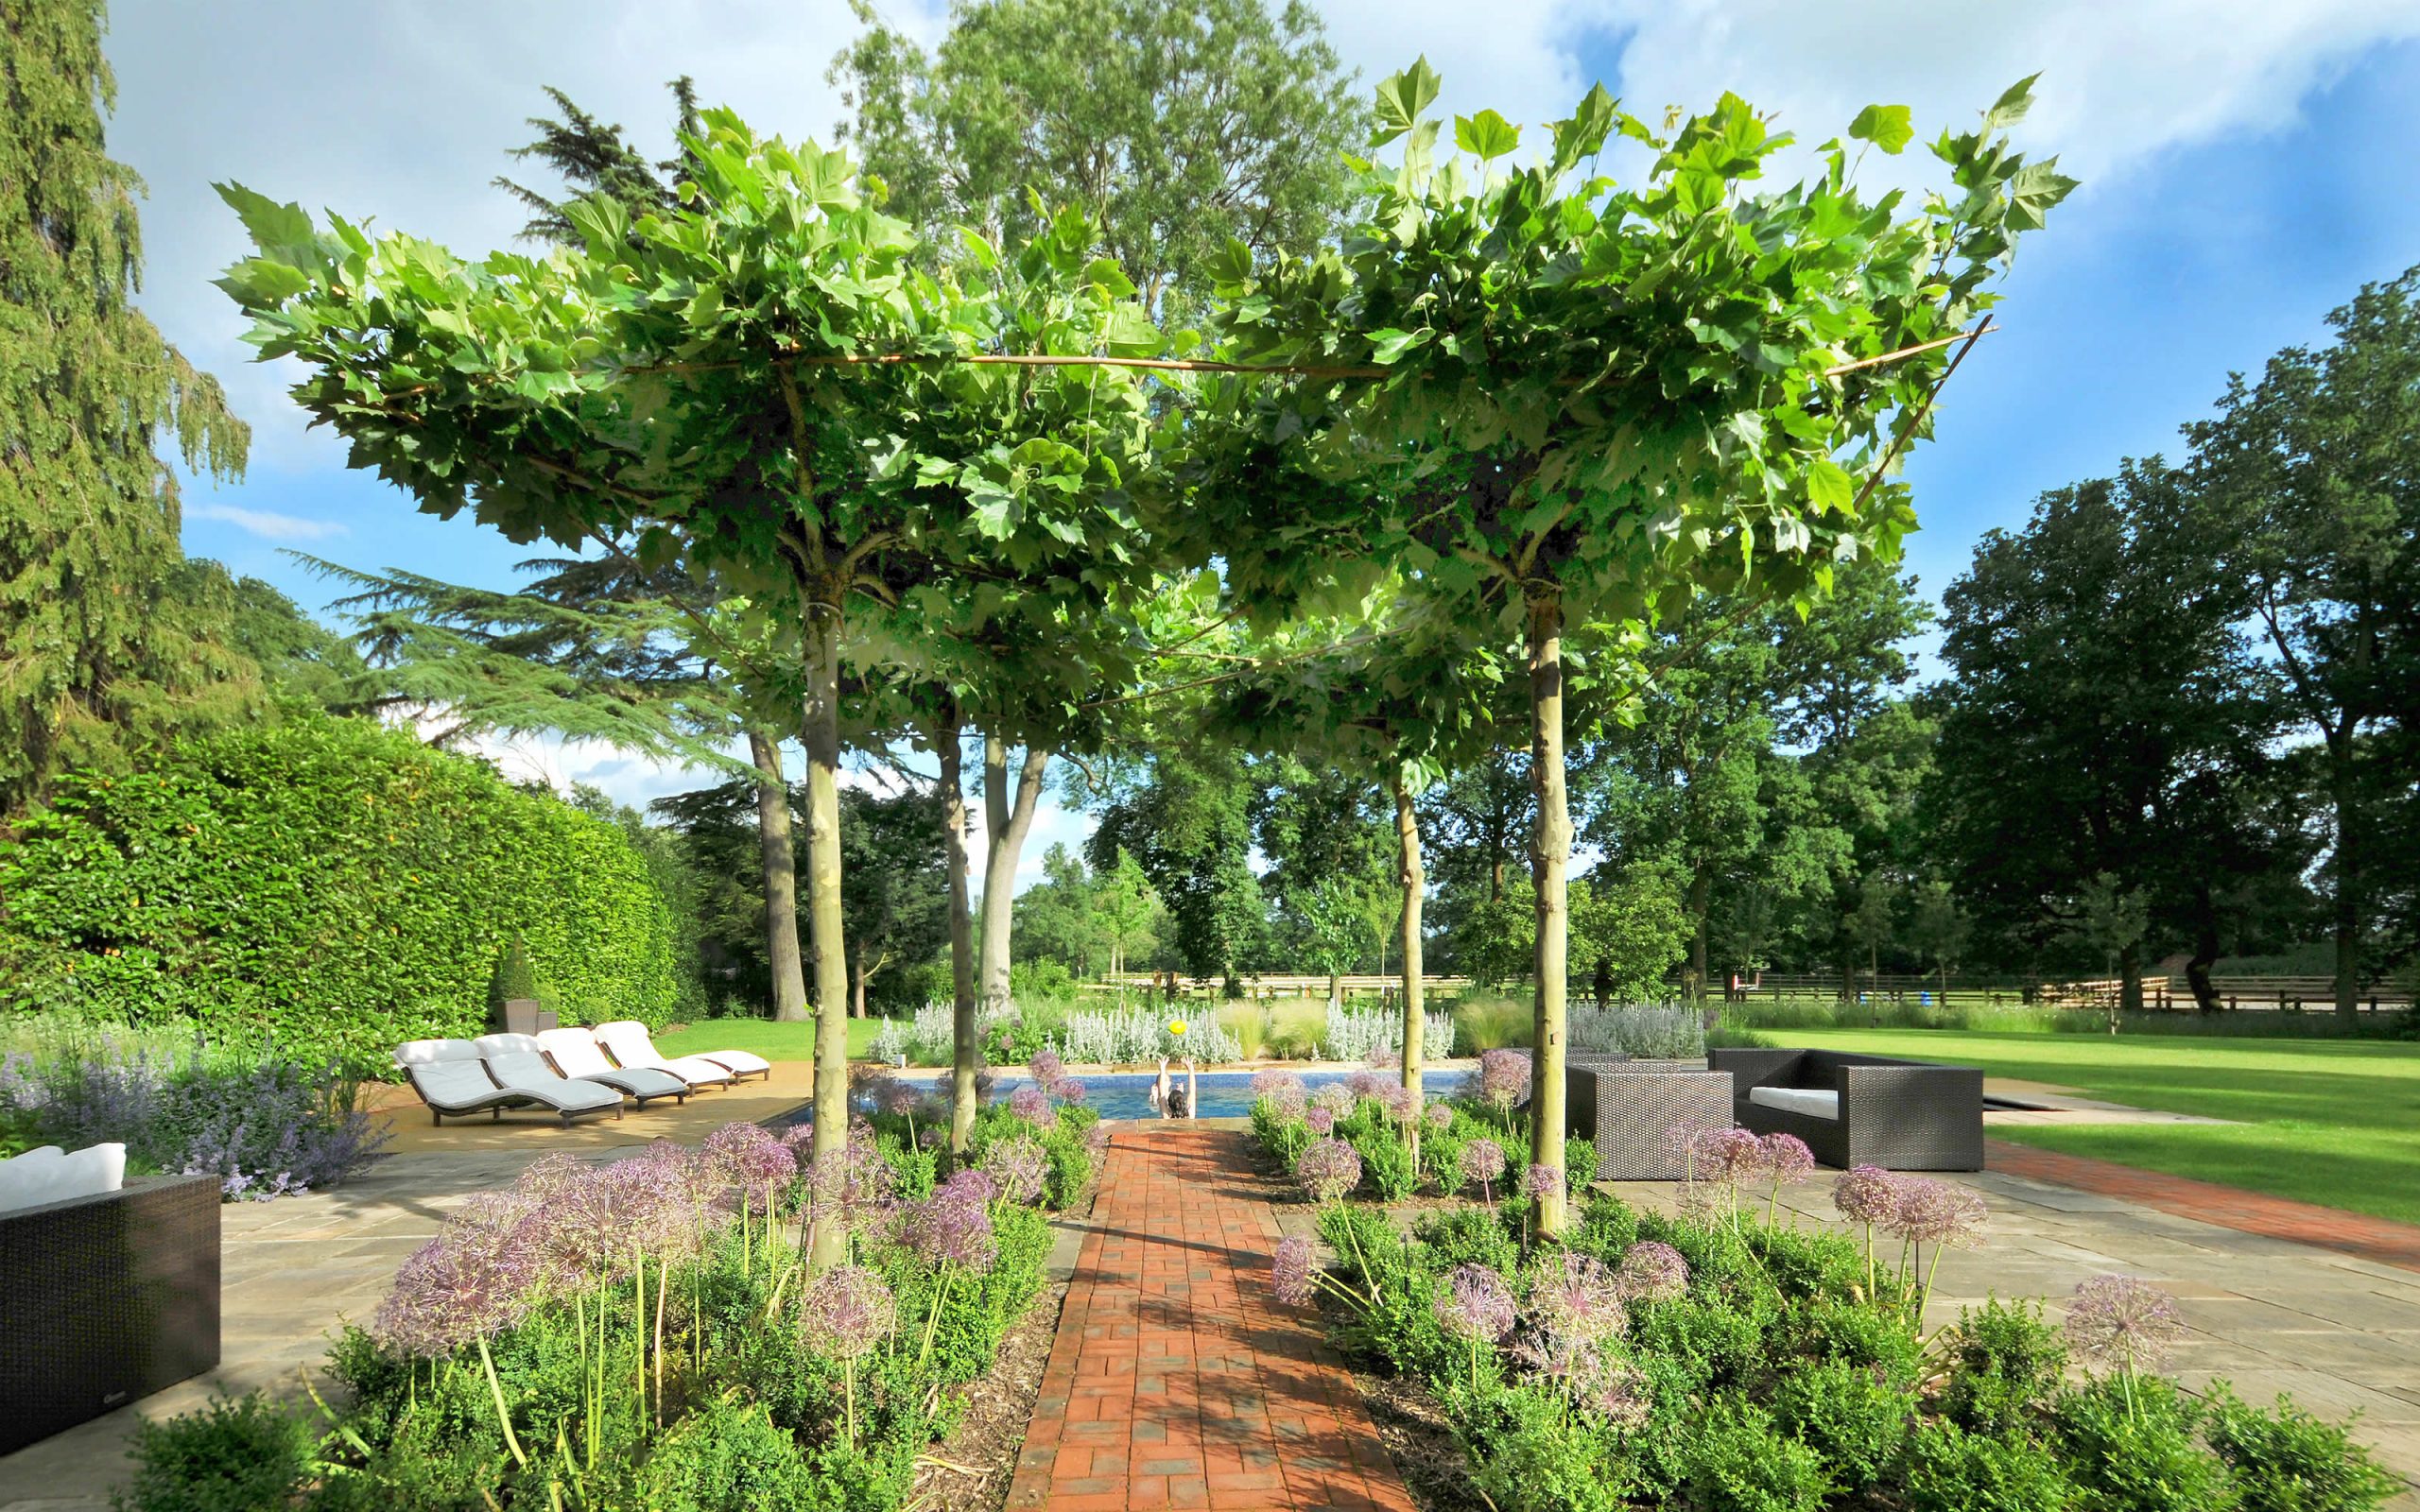 Chobham surrey country garden pleached trees modern luxury design